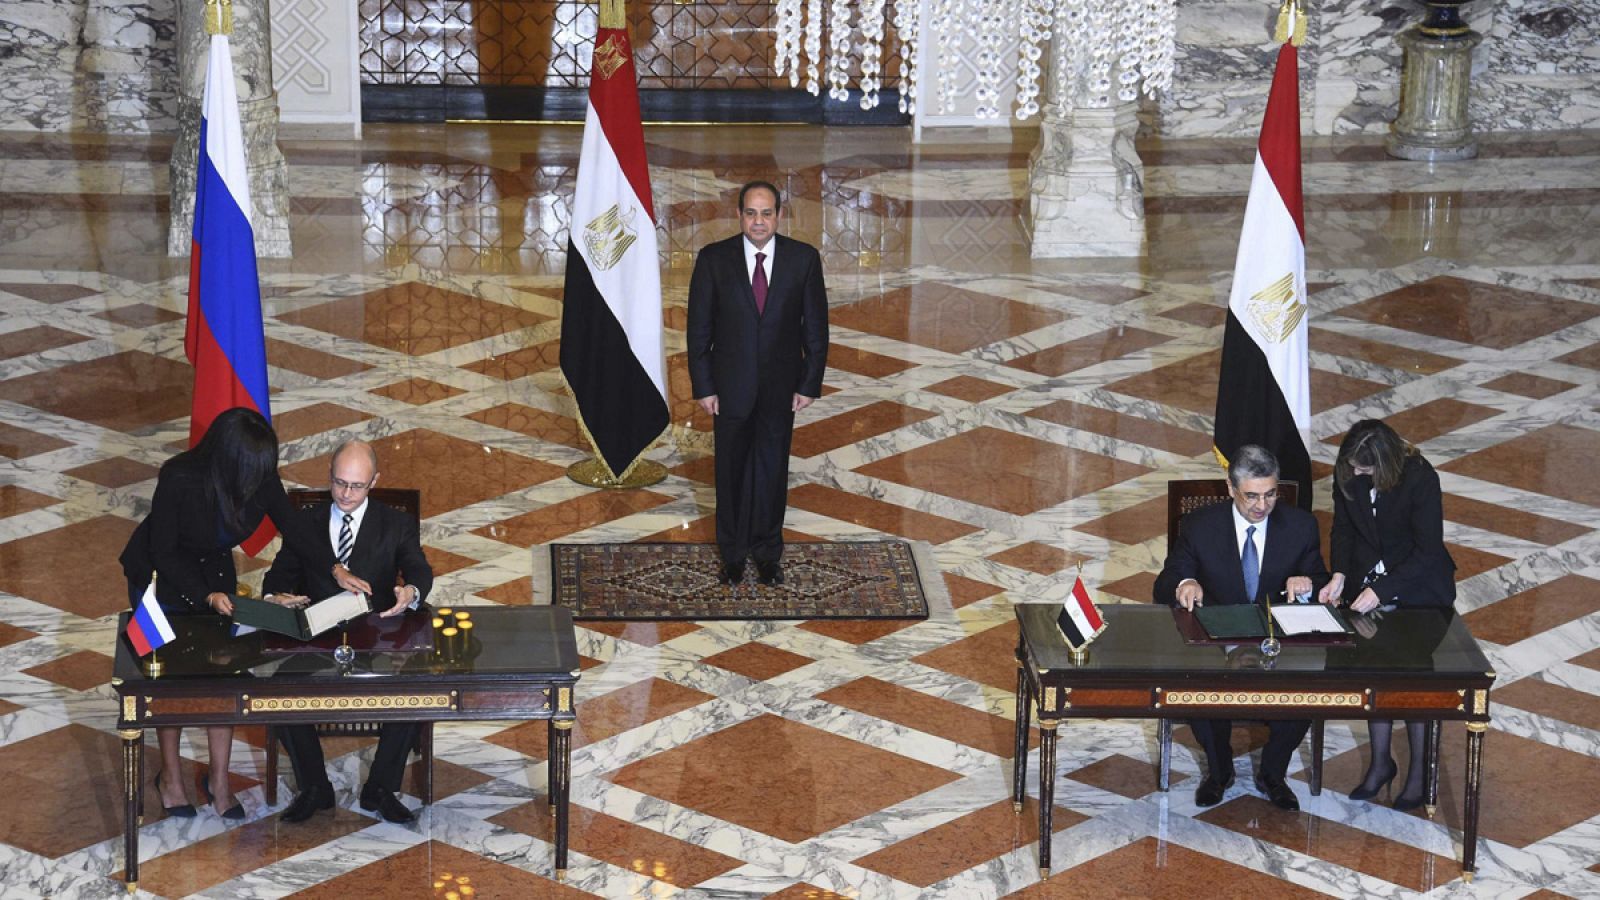 El director de la agencia atómica rusa (Rosatom), Serguéi Kiriyenko, y el ministro egipcio de Electricidad, Mohamed Shaker, ante el presidente de Egipto, Abdelfatah al Sisi, durante la firma del acuerdo en El Cairo, Egipto